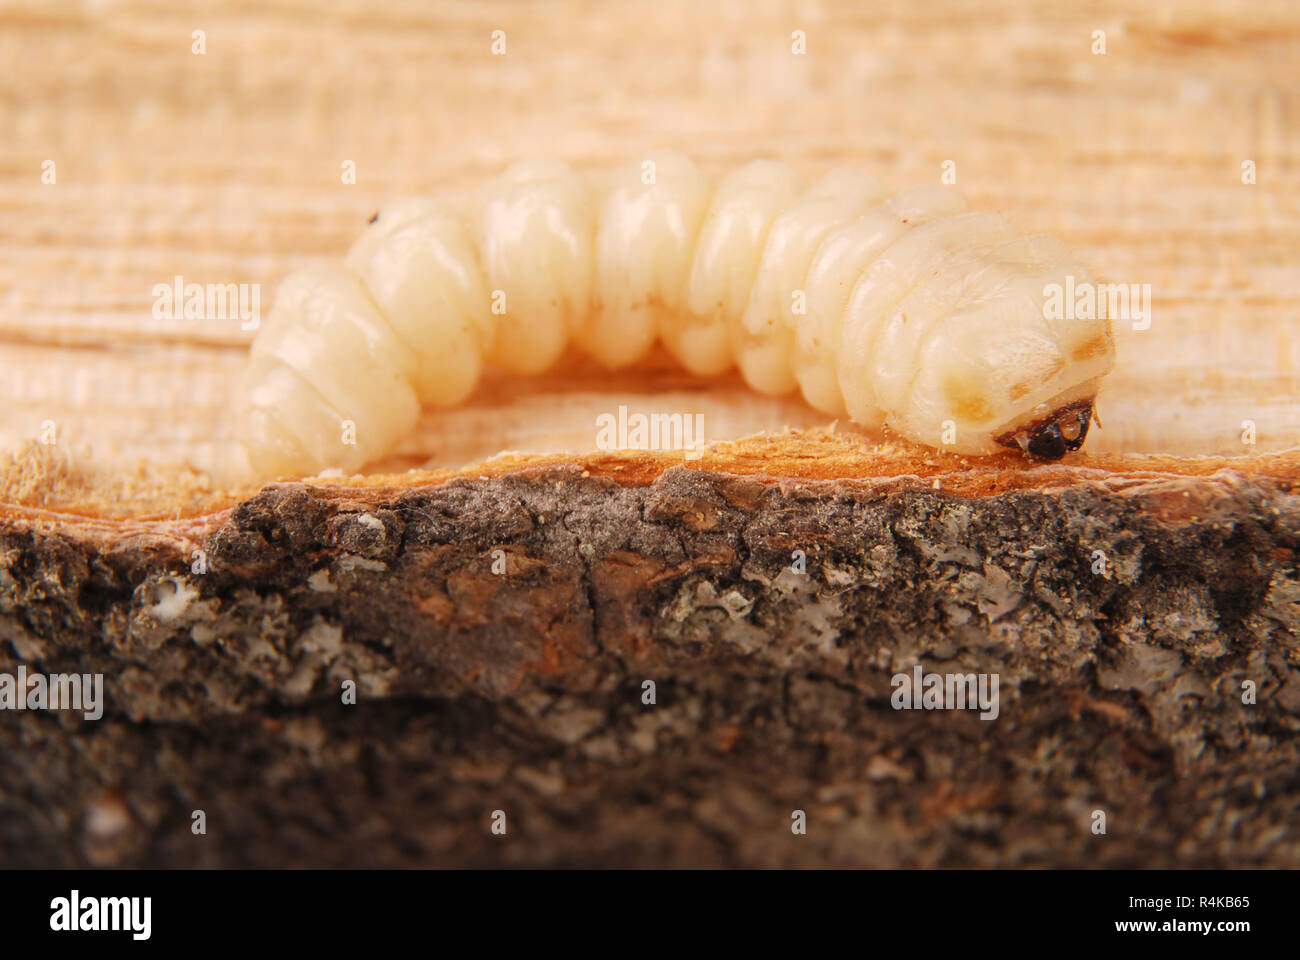 Larva bark beetle (Scolytinae). Larva of Bark beetles legless on wood background. Stock Photo